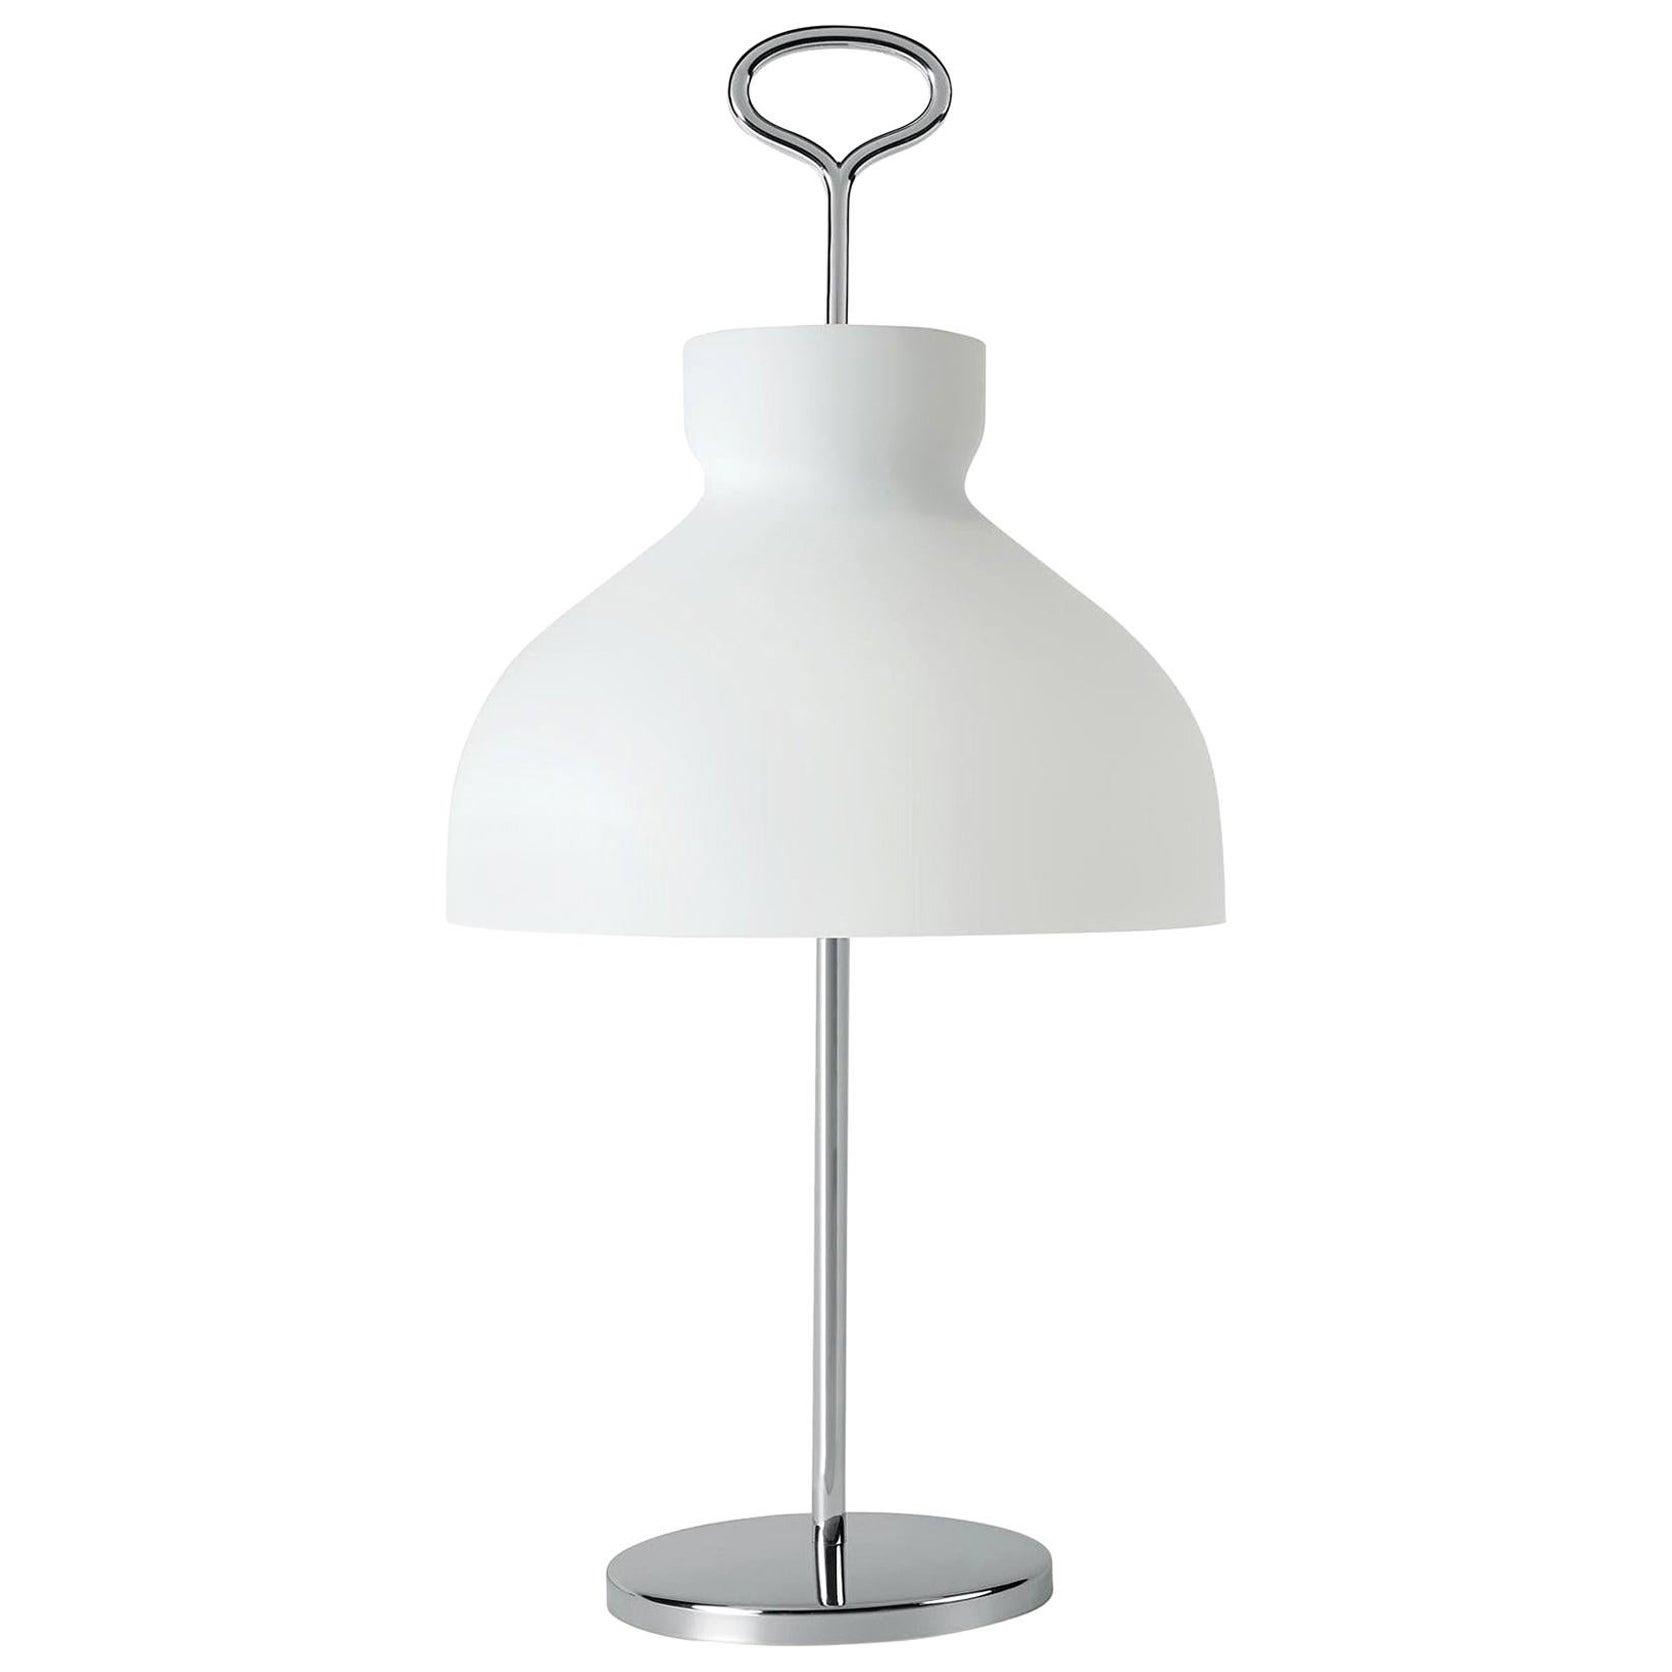 Large Ignazio Gardella 'Arenzano' Table Lamp in Chrome and Glass for Tato Italia In New Condition For Sale In Glendale, CA